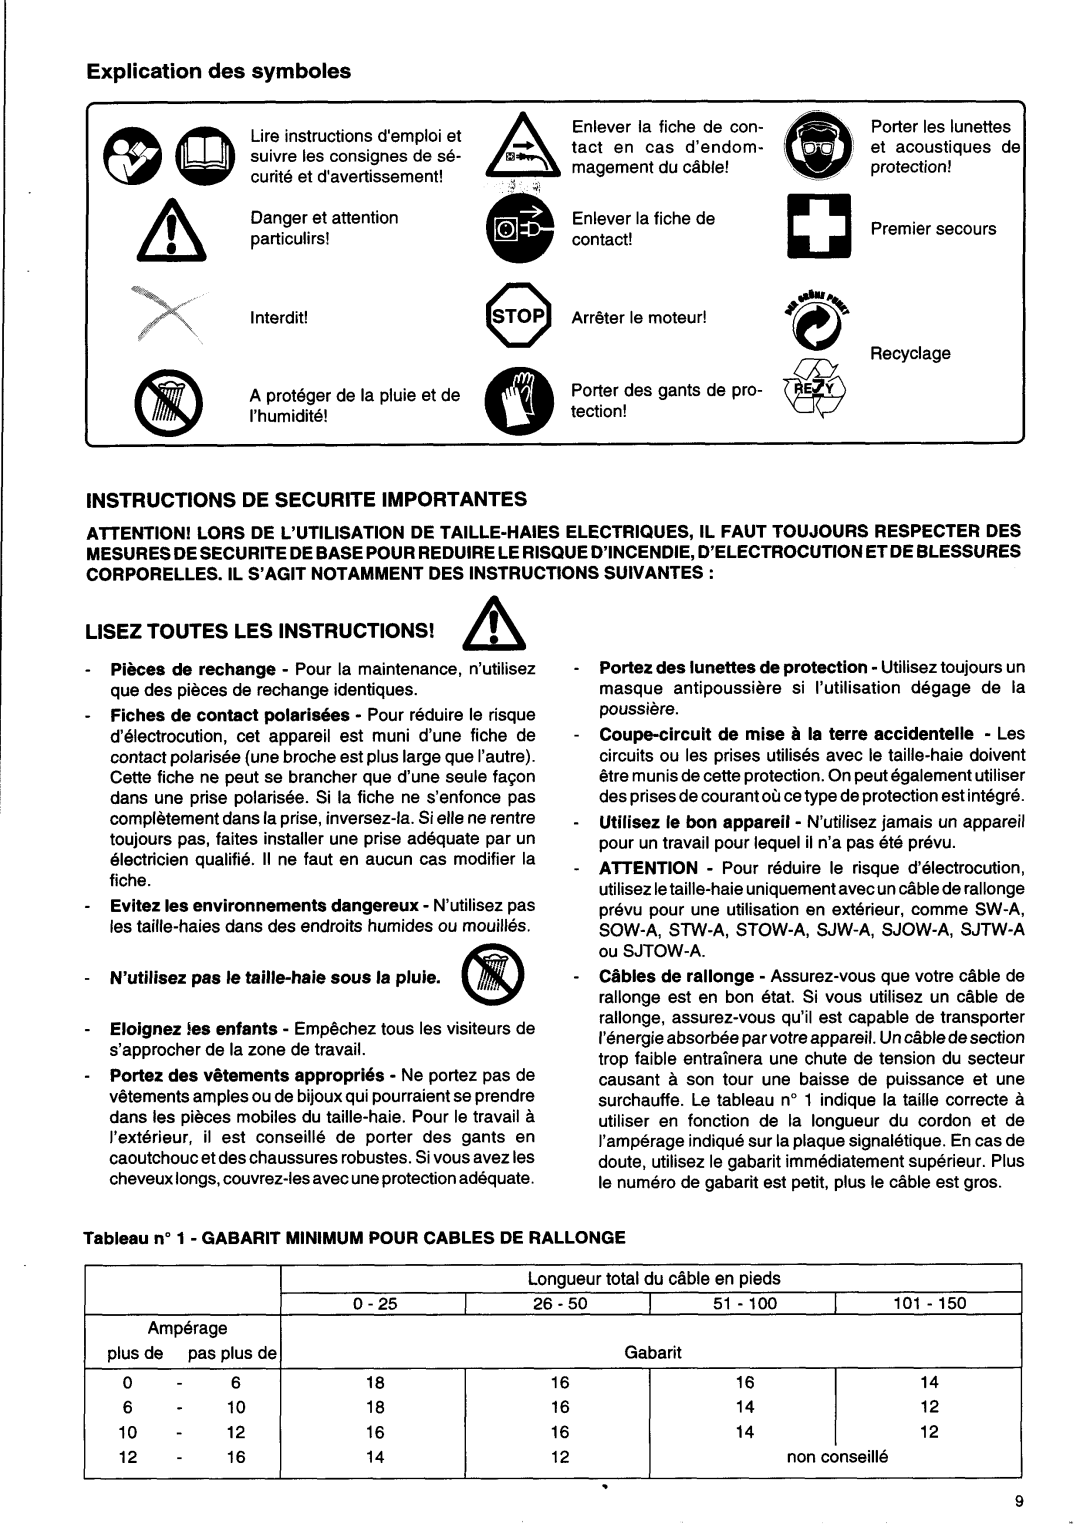 Makita UH6330, UH5530 Explication des symboles, Instructions De Securite Importantes, LlSEZ TOUTES LES INSTRUCTIONS! A 